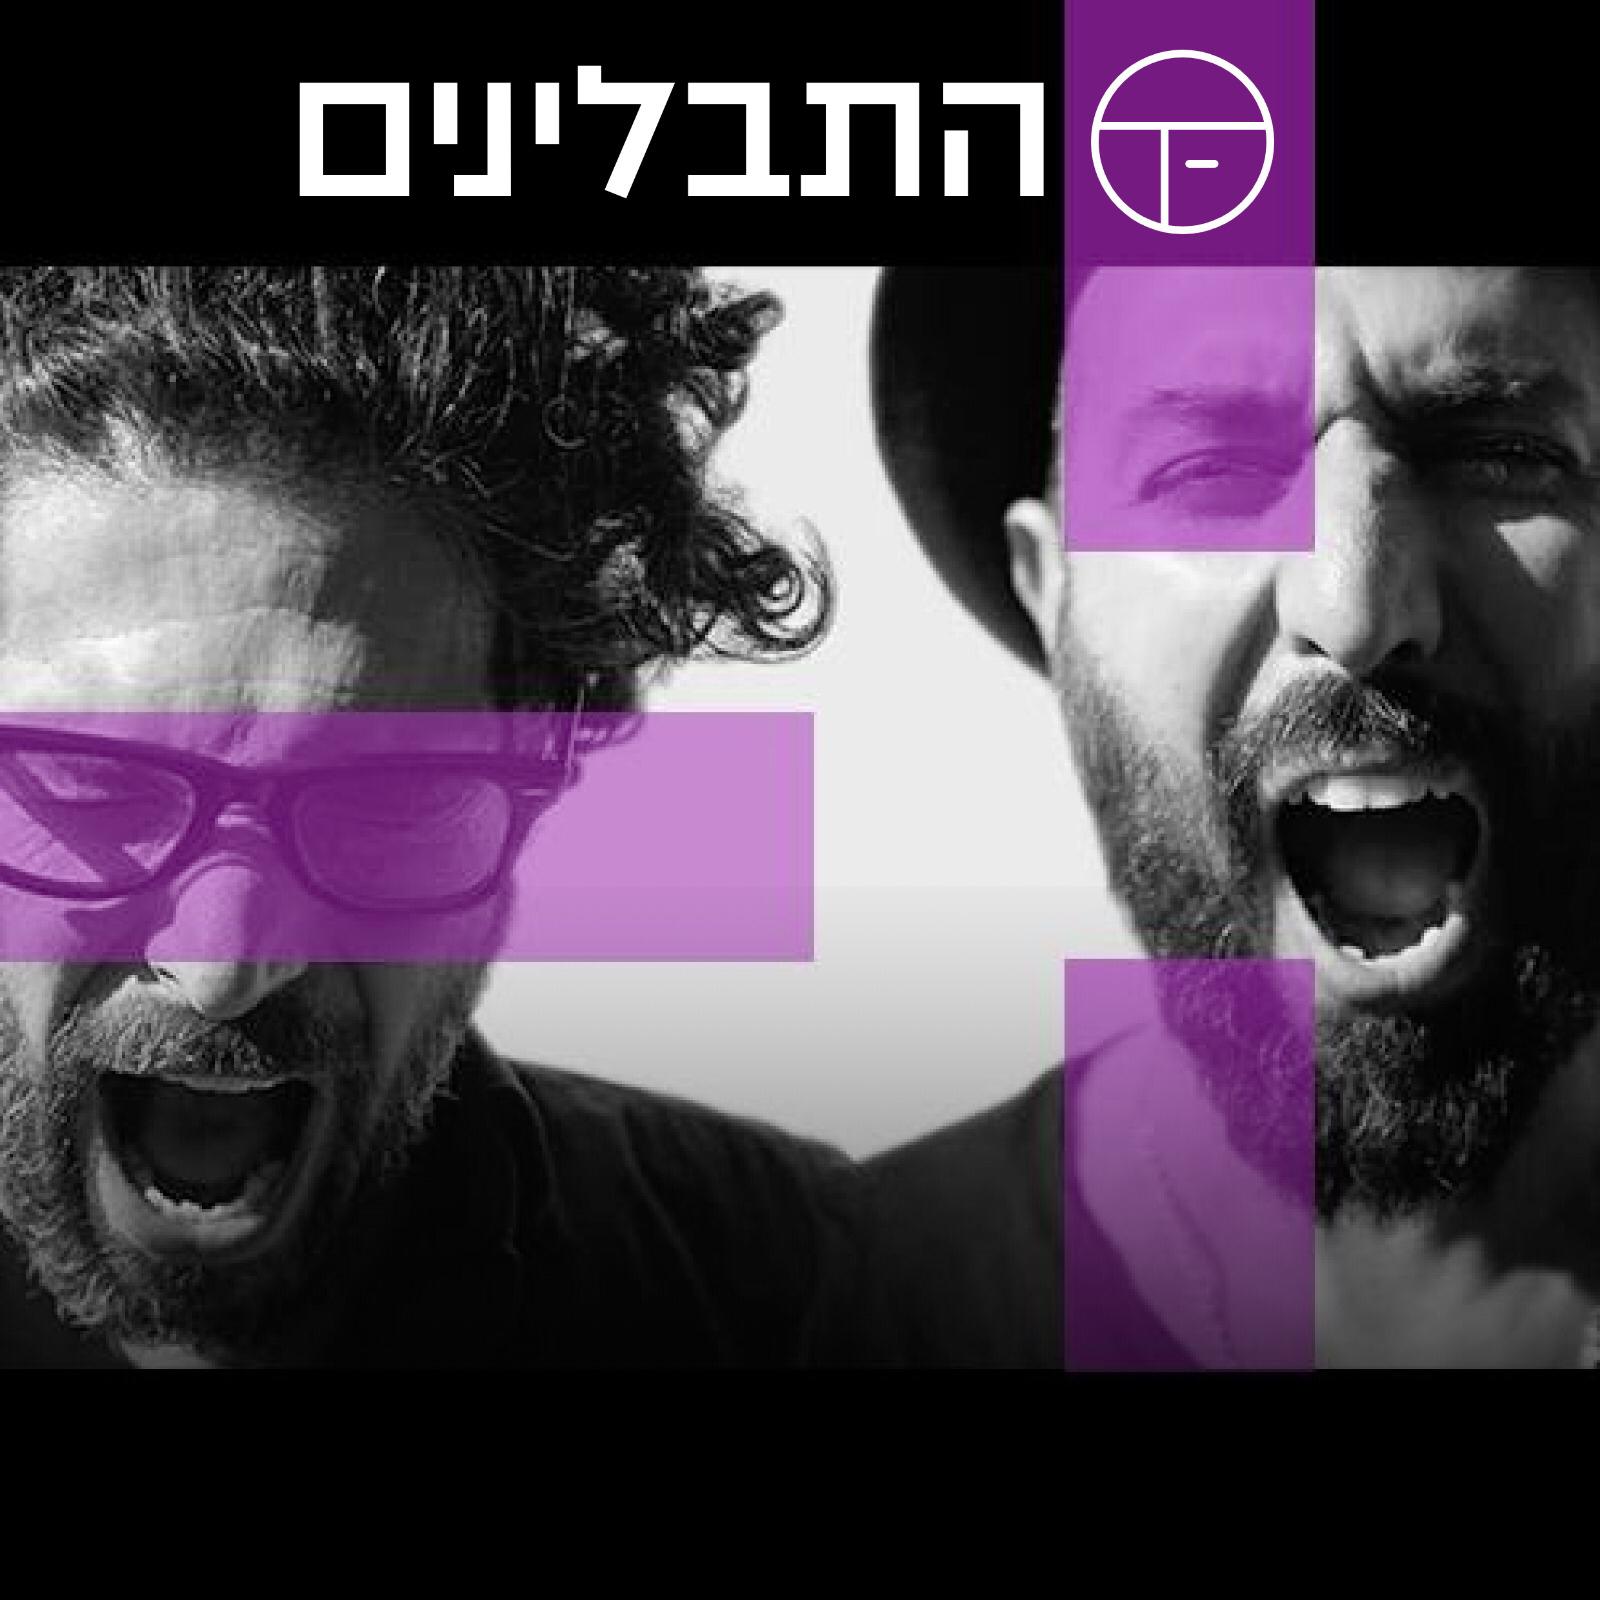 פסטיבל אביב ישראלי ה 12 בתיאטרון הסמטה המחודש חוגג יצירה נשית